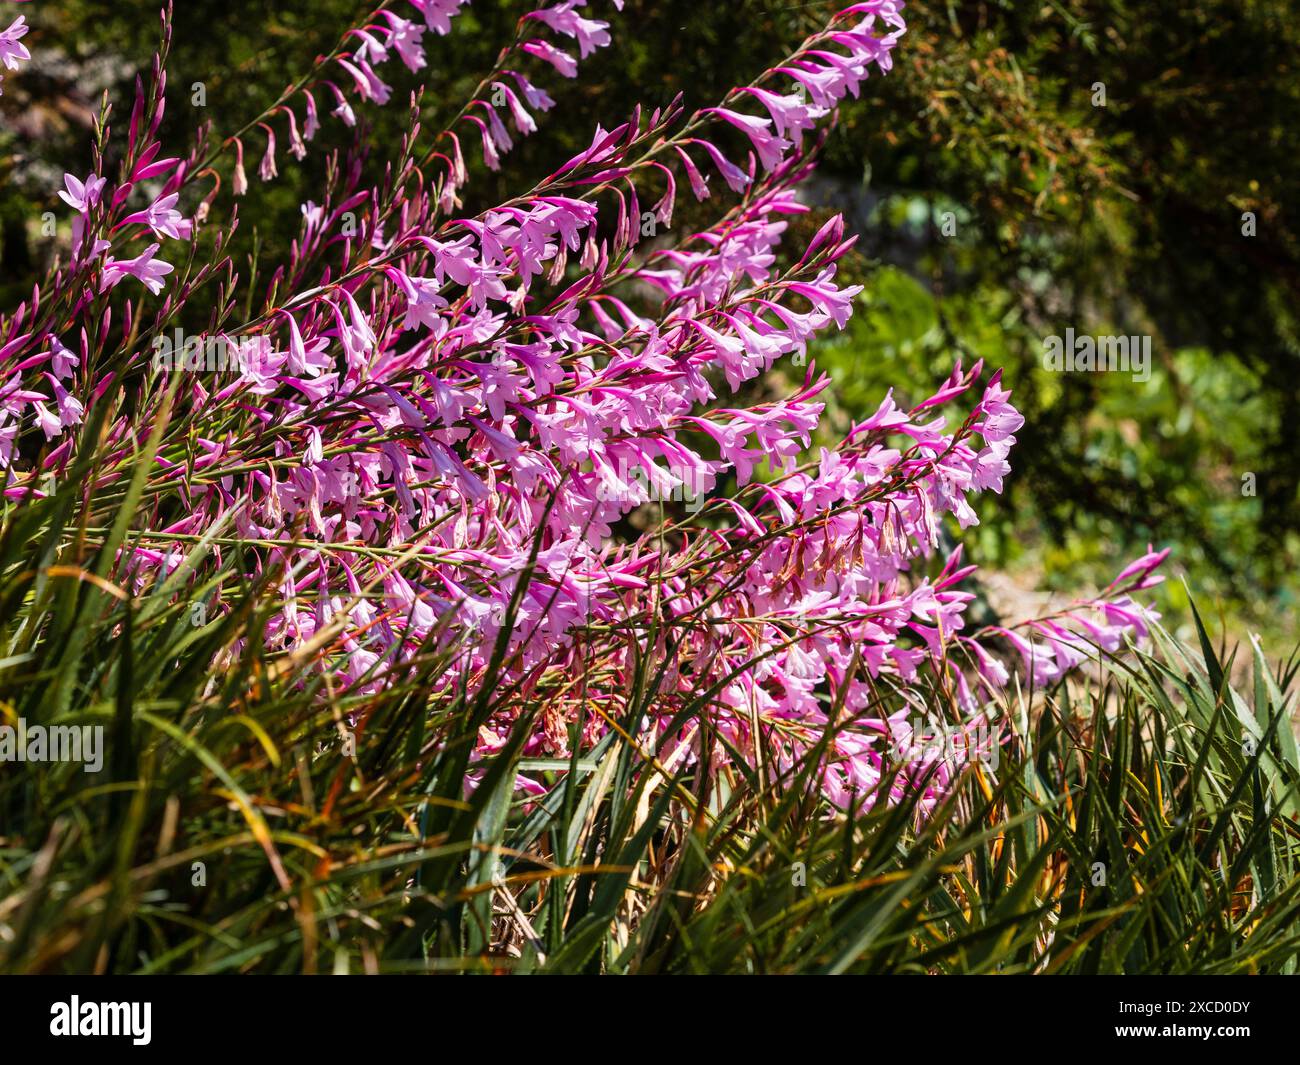 Fiori tubolari rosa nelle punte del giglio semi-duro e corme del capo sudafricano, Watsonia borbonica Foto Stock